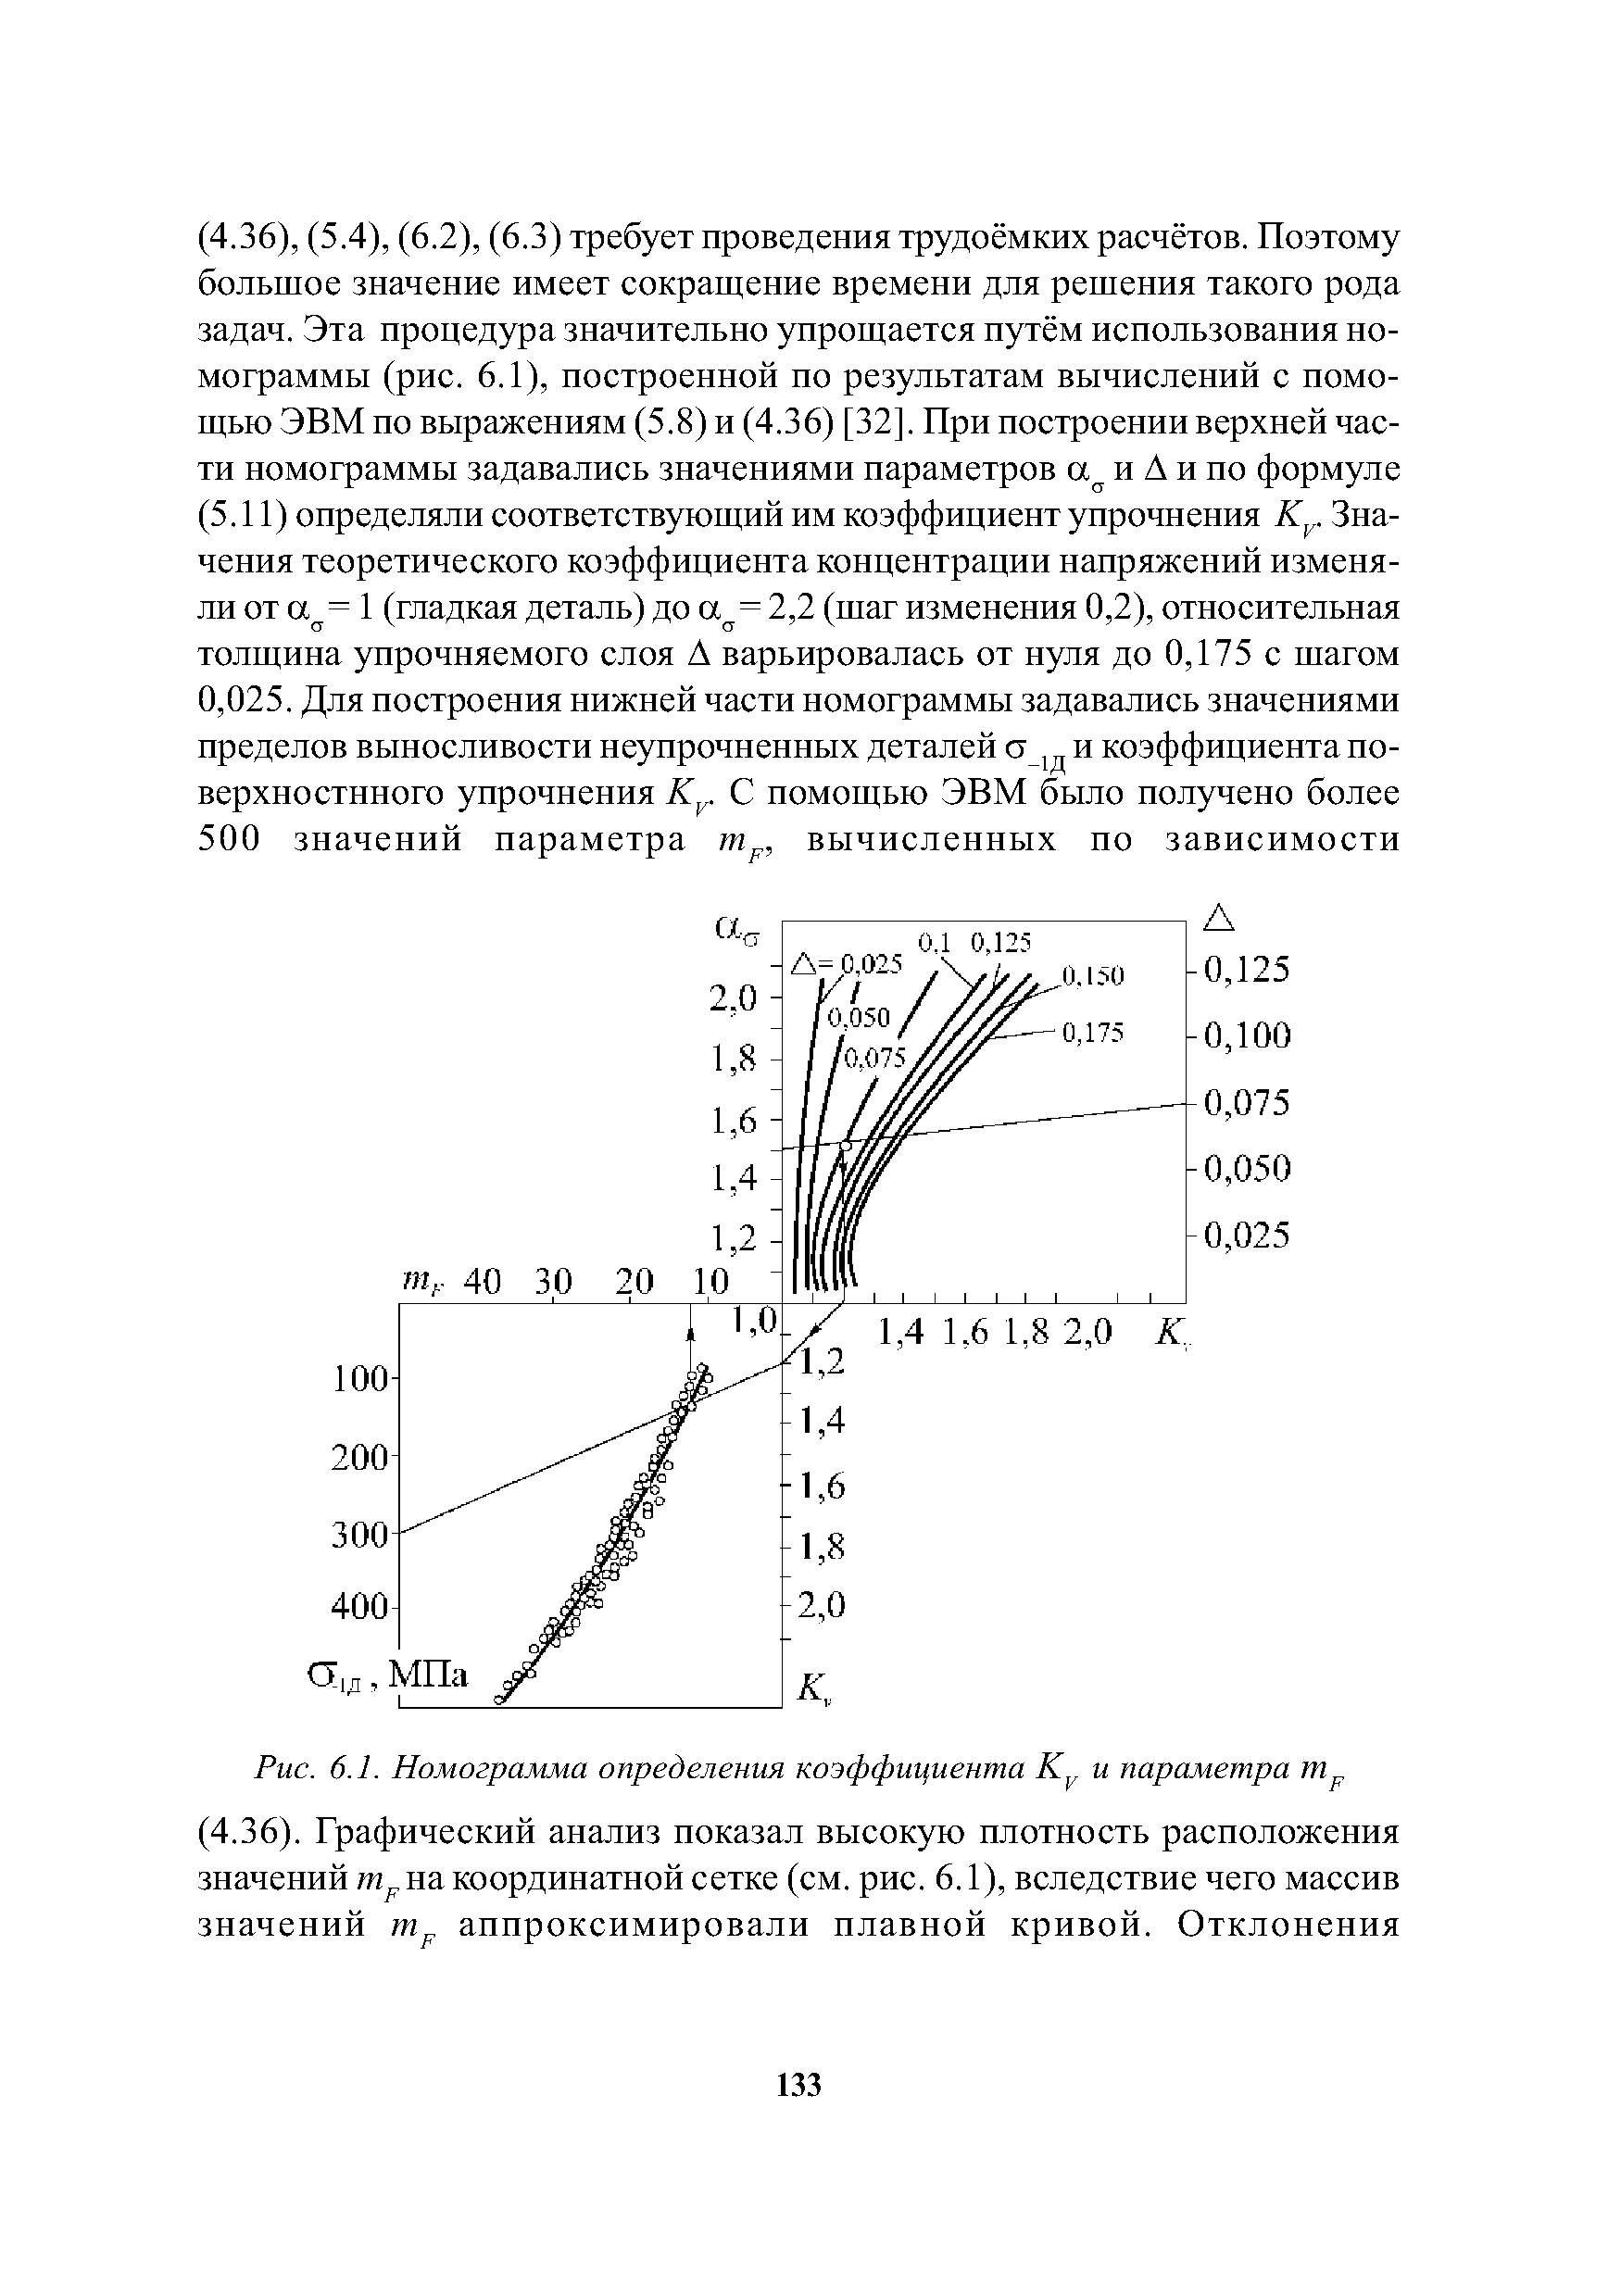 Рис. 6.1. Номограмма определения коэффициента и параметра т .
